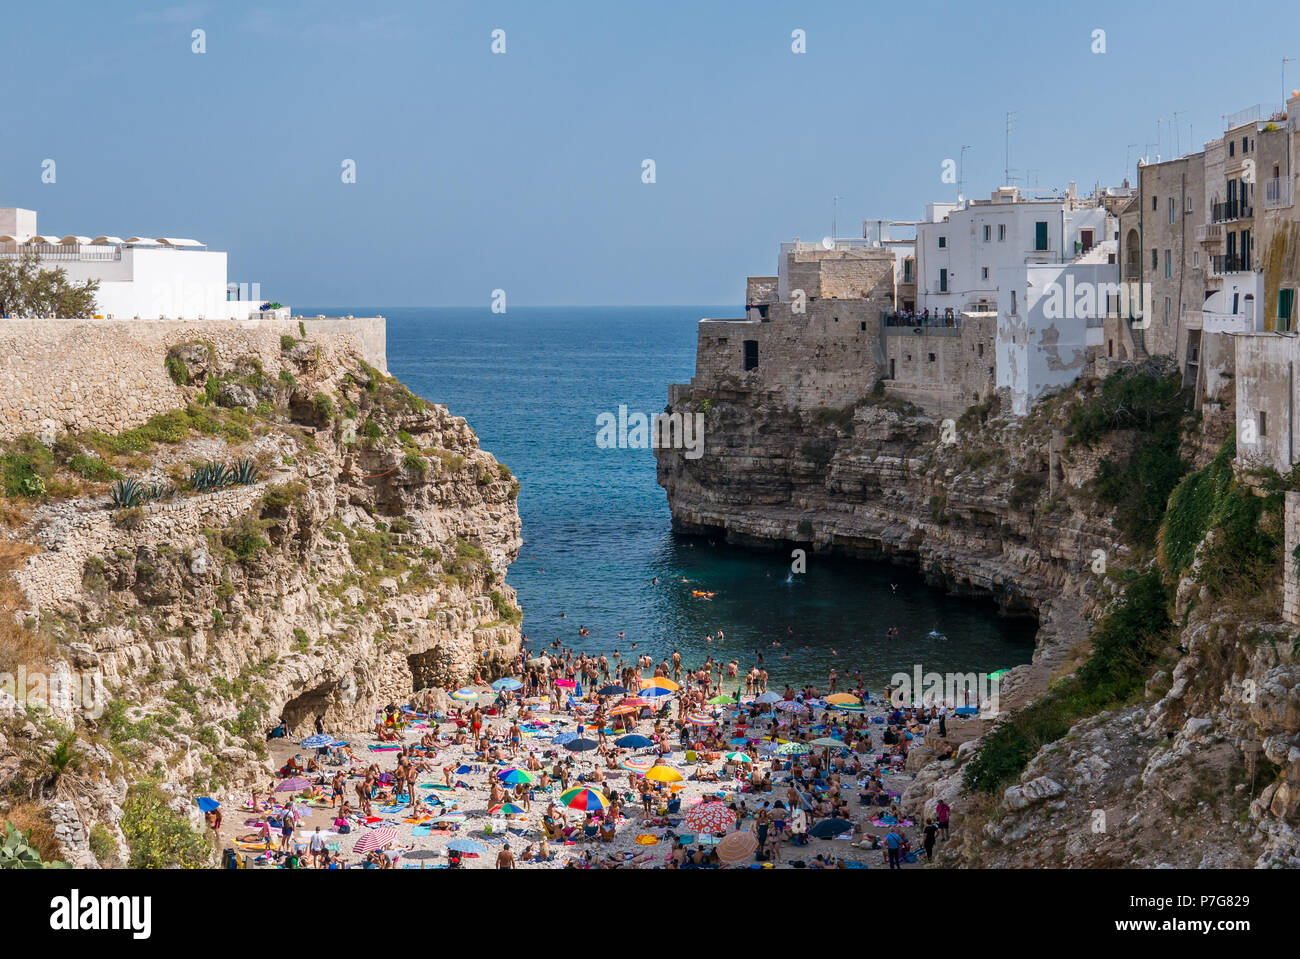 Polignano a Mare, Italia - Personas bañarse en el Mar Mediterráneo en la playa de la ciudad Polignano a Mare, ciudad con playa en Apulia, en el sur de Italia. Foto de stock